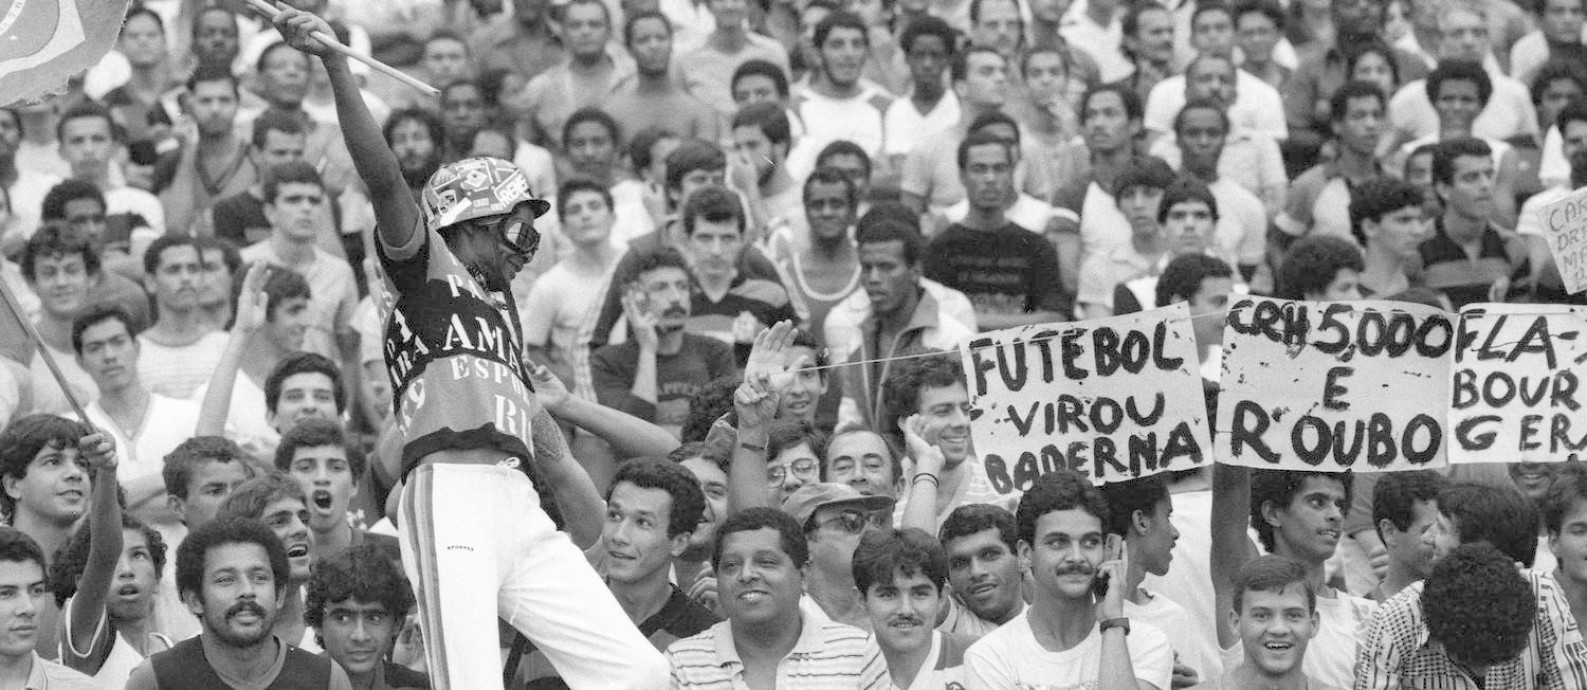 Torcedores boicotam a arquibancada e lotam a geral em protesto ao preço dos ingressos no Maracanã, em 1984 Foto: Hipólito Pereira